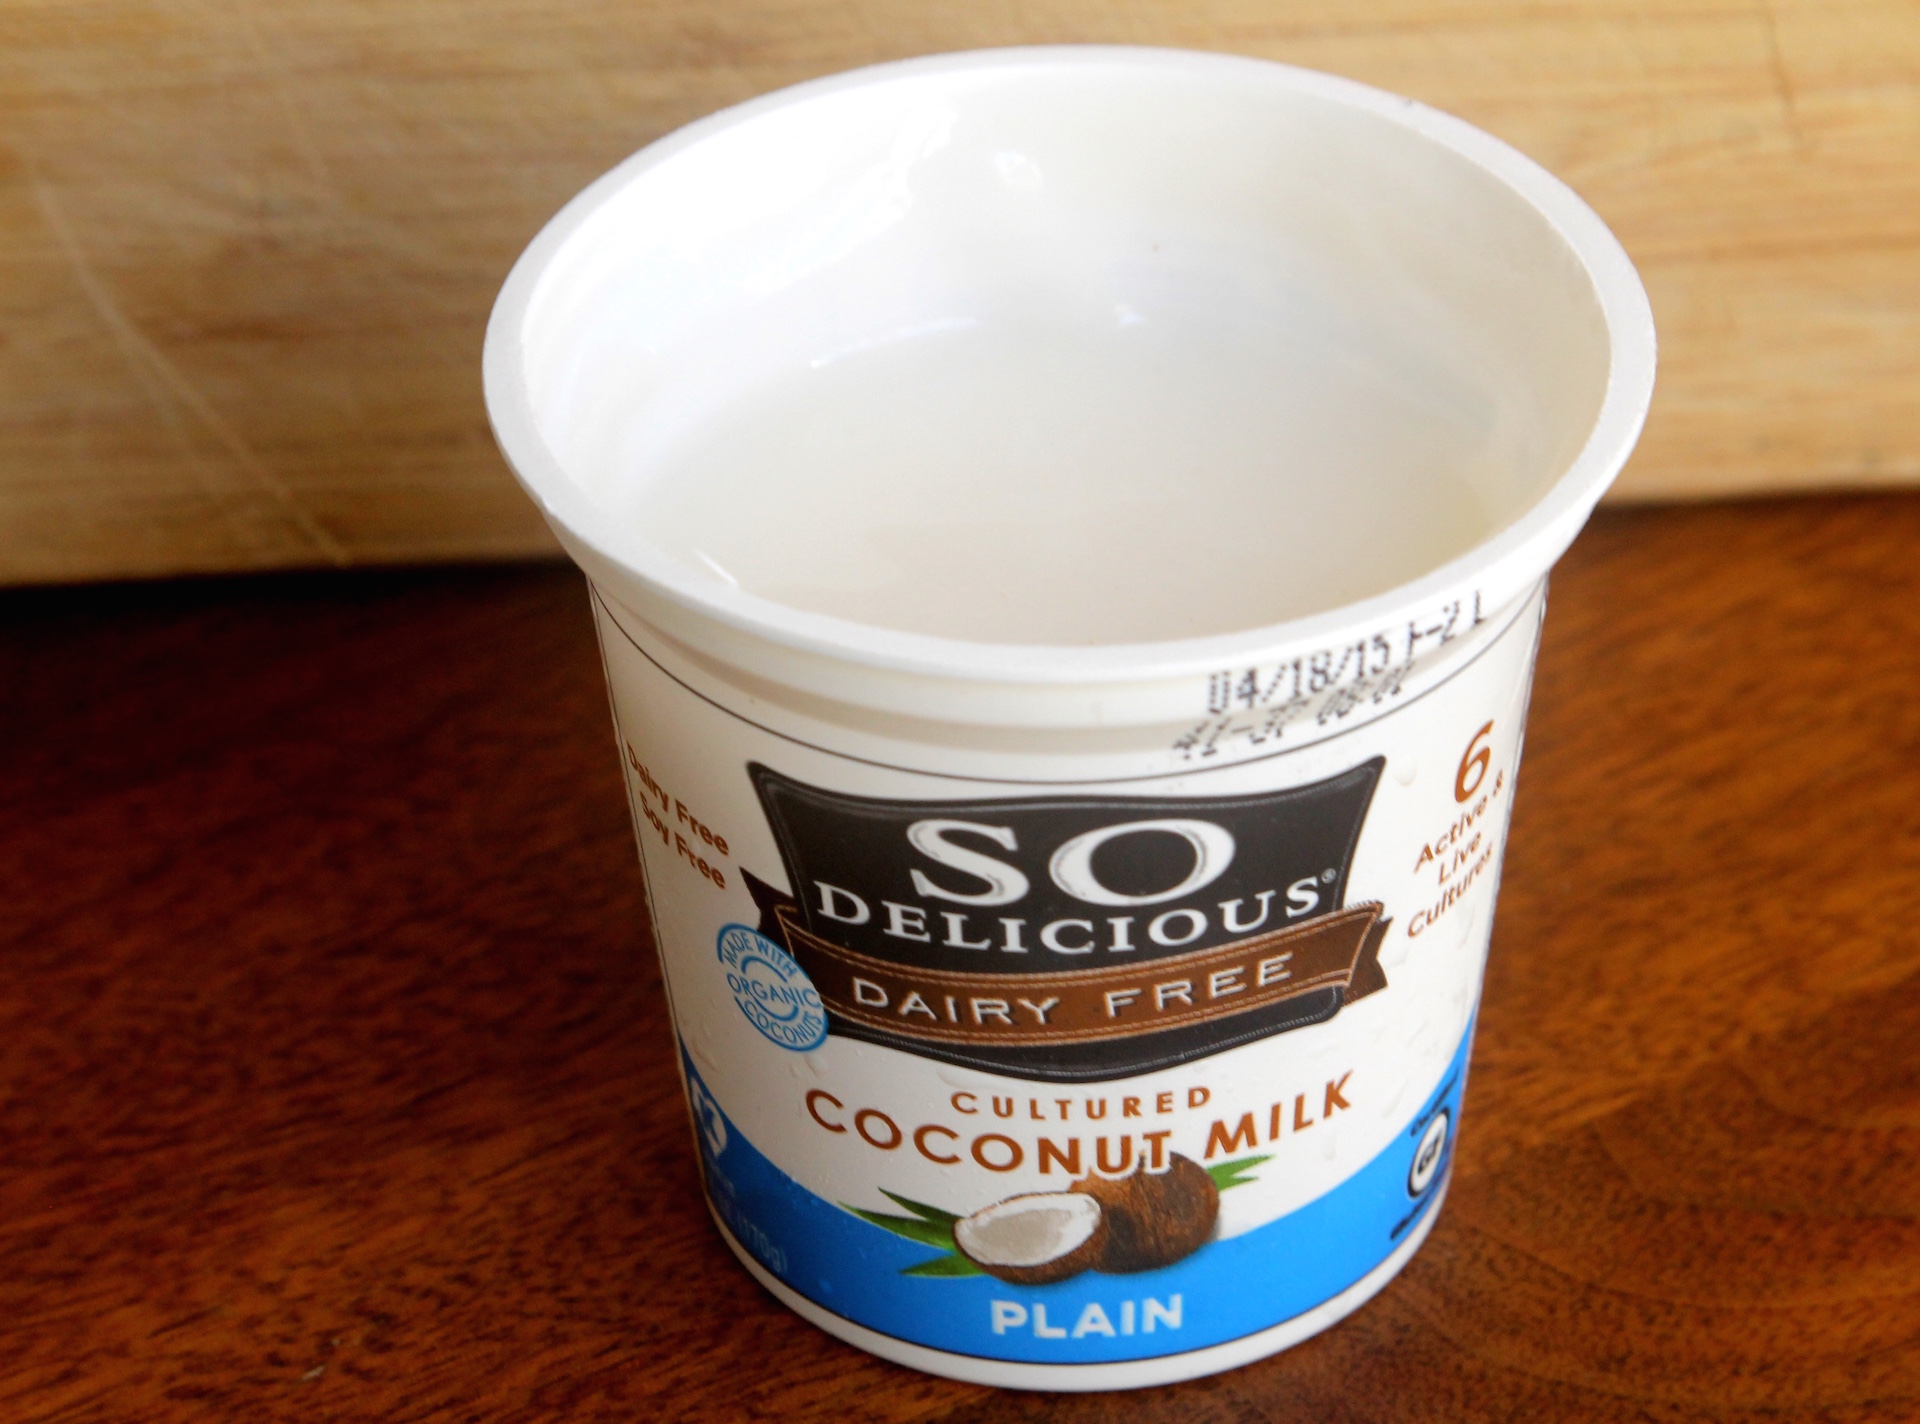 So Delicious coconut milk yogurt. 